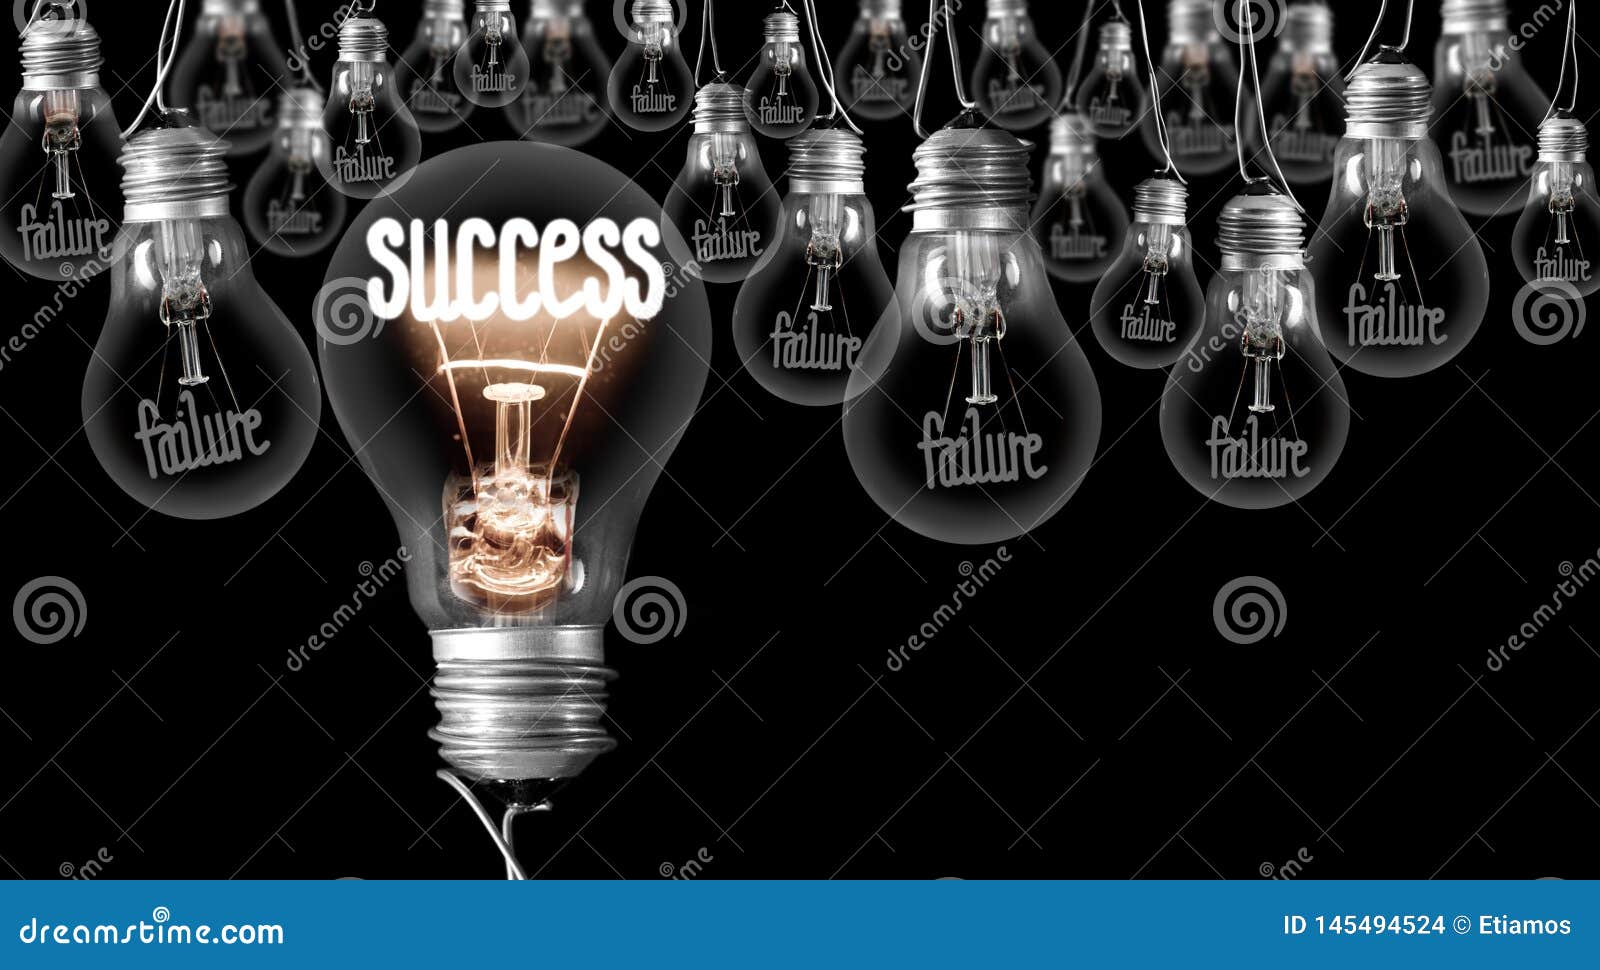 light bulbs with failure - success concept